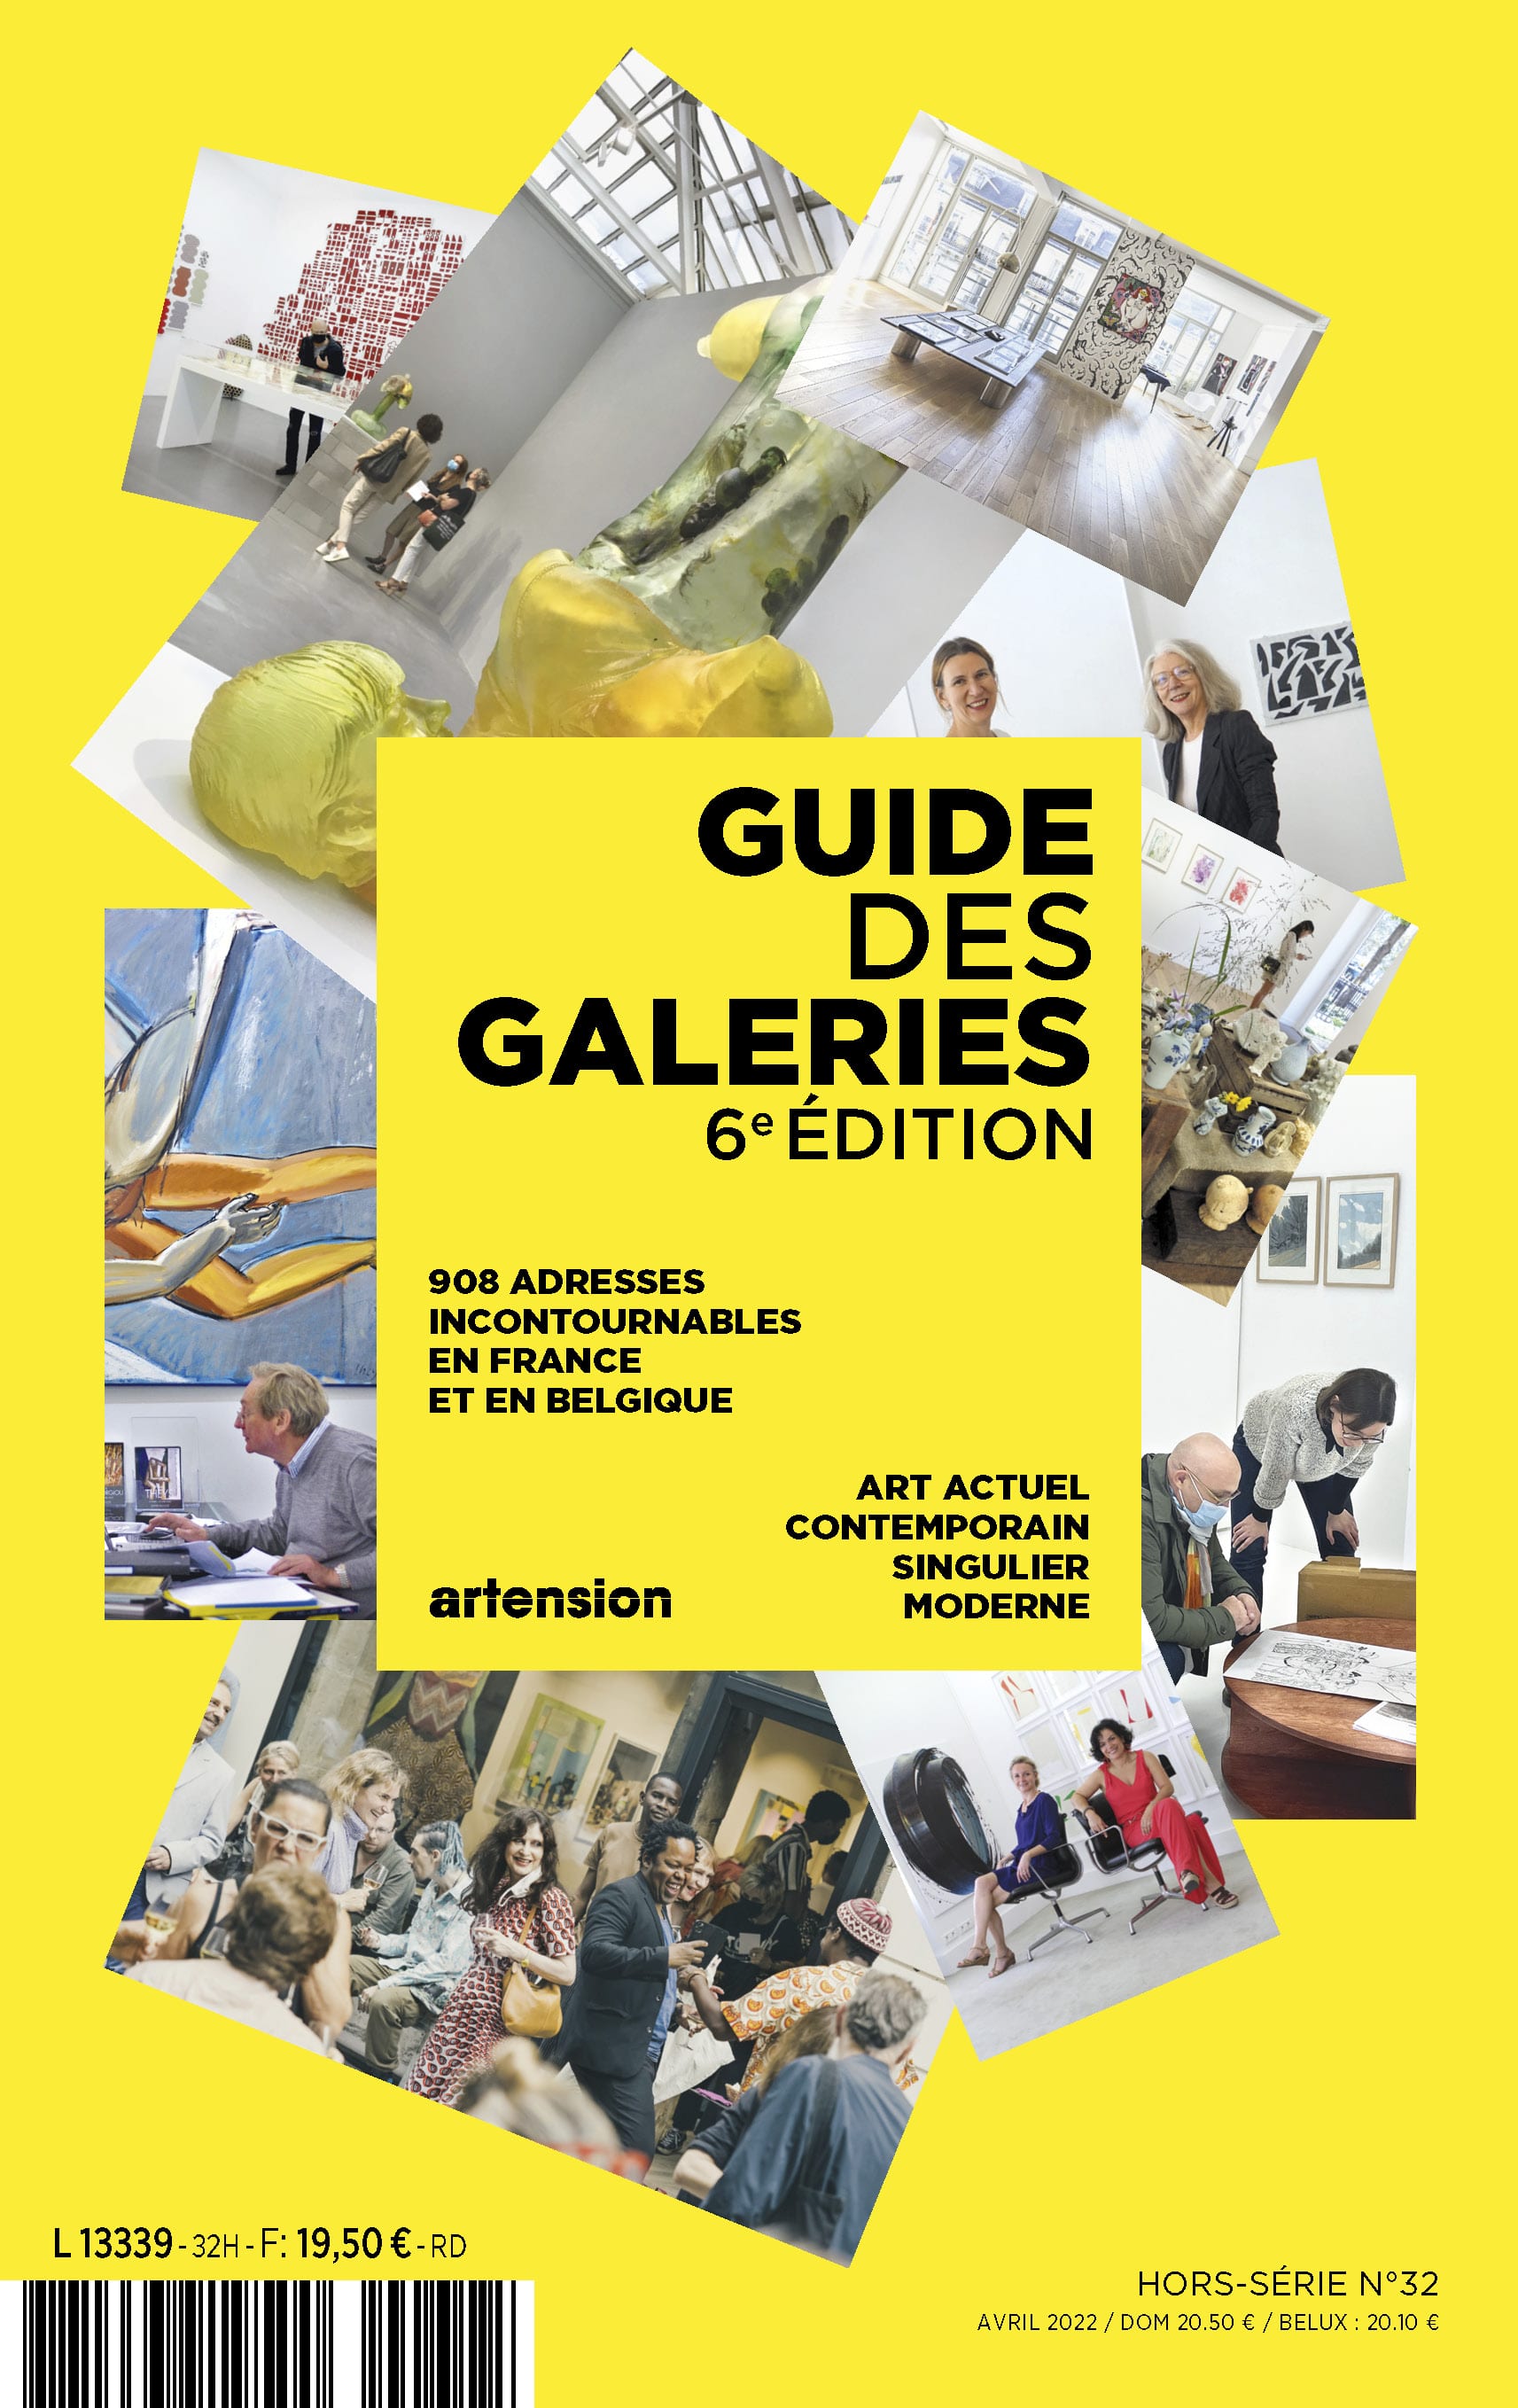 Le Guide des galeries